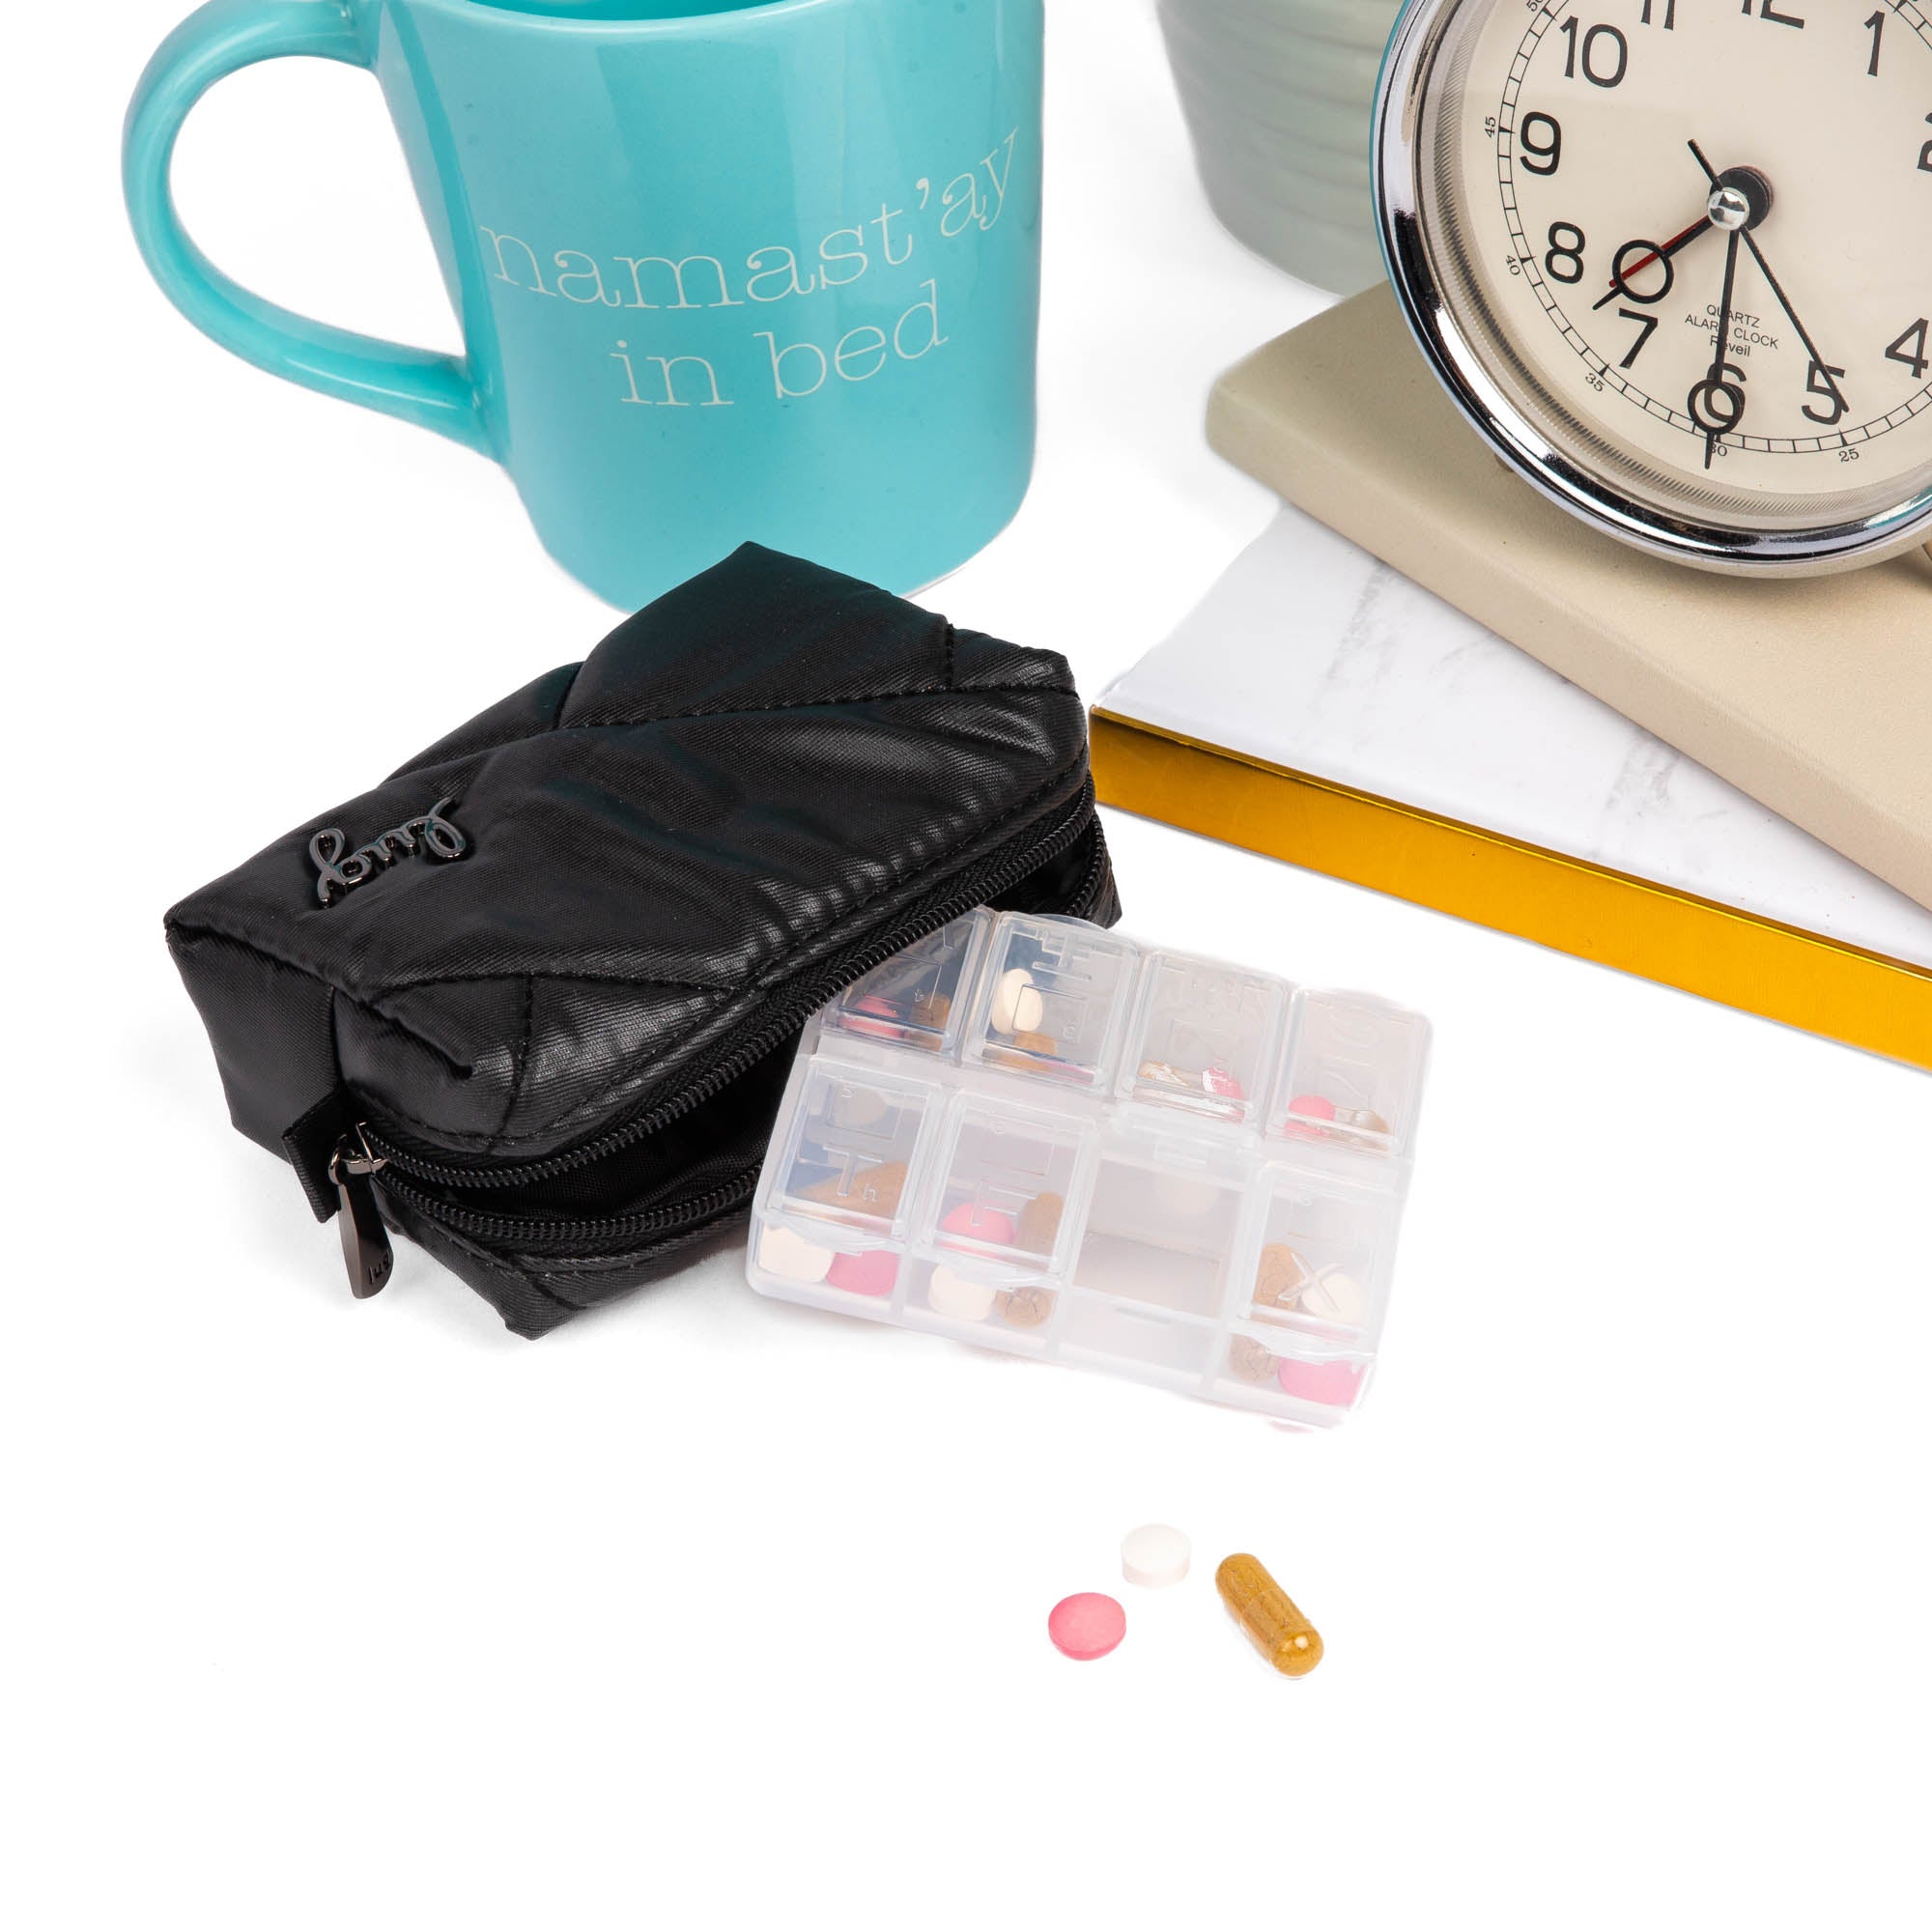 Purse Rehab - Louis Vuitton Pill Case! ▪️Our latest fun